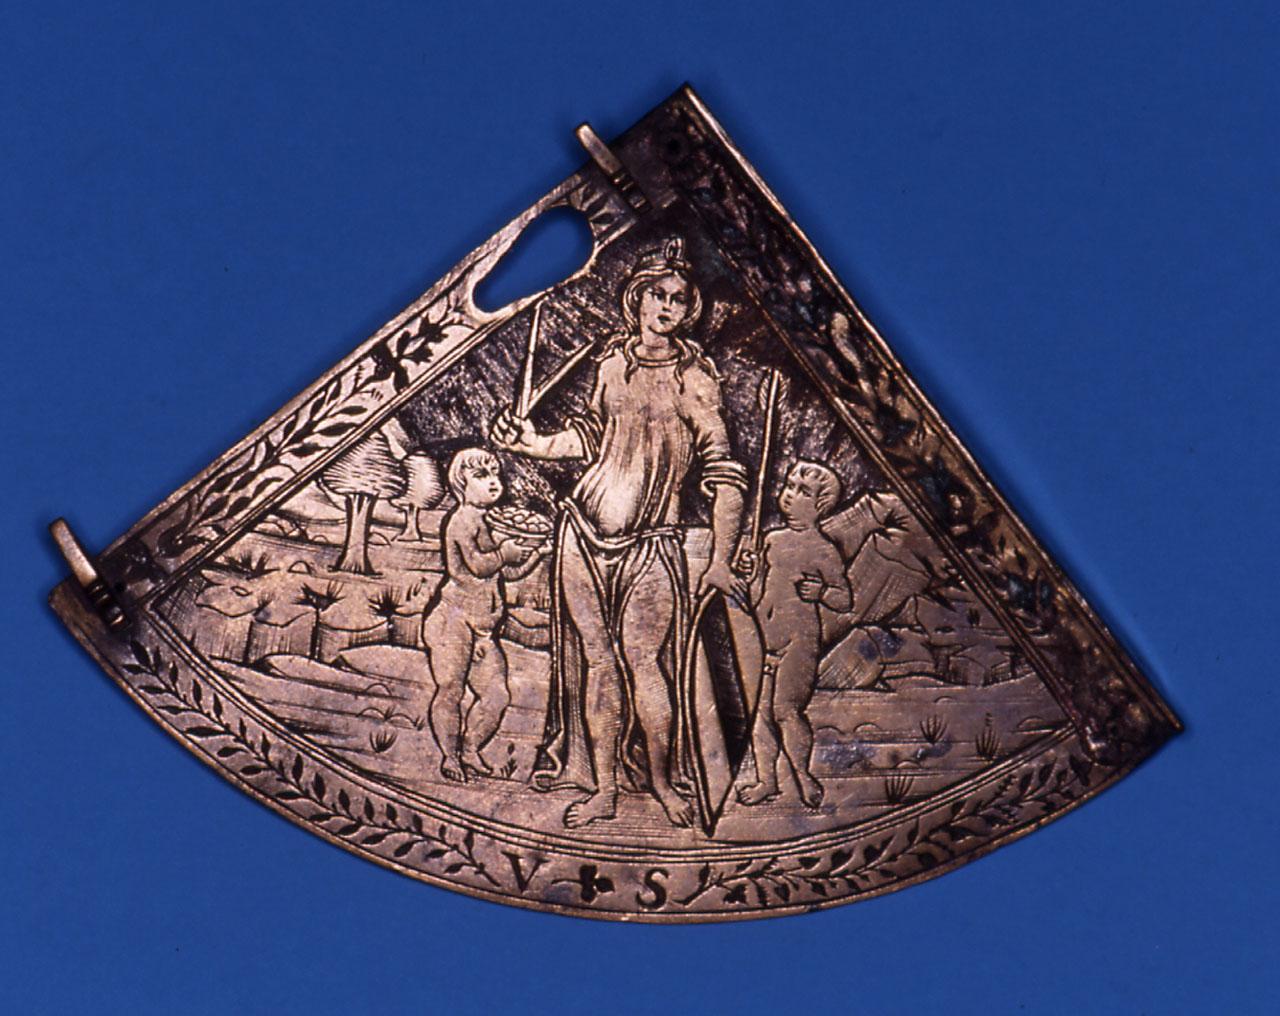 Meridiana (recto), Allegoria (verso) (astrolabio) di Baldini Baccio (maniera) (sec. XV)